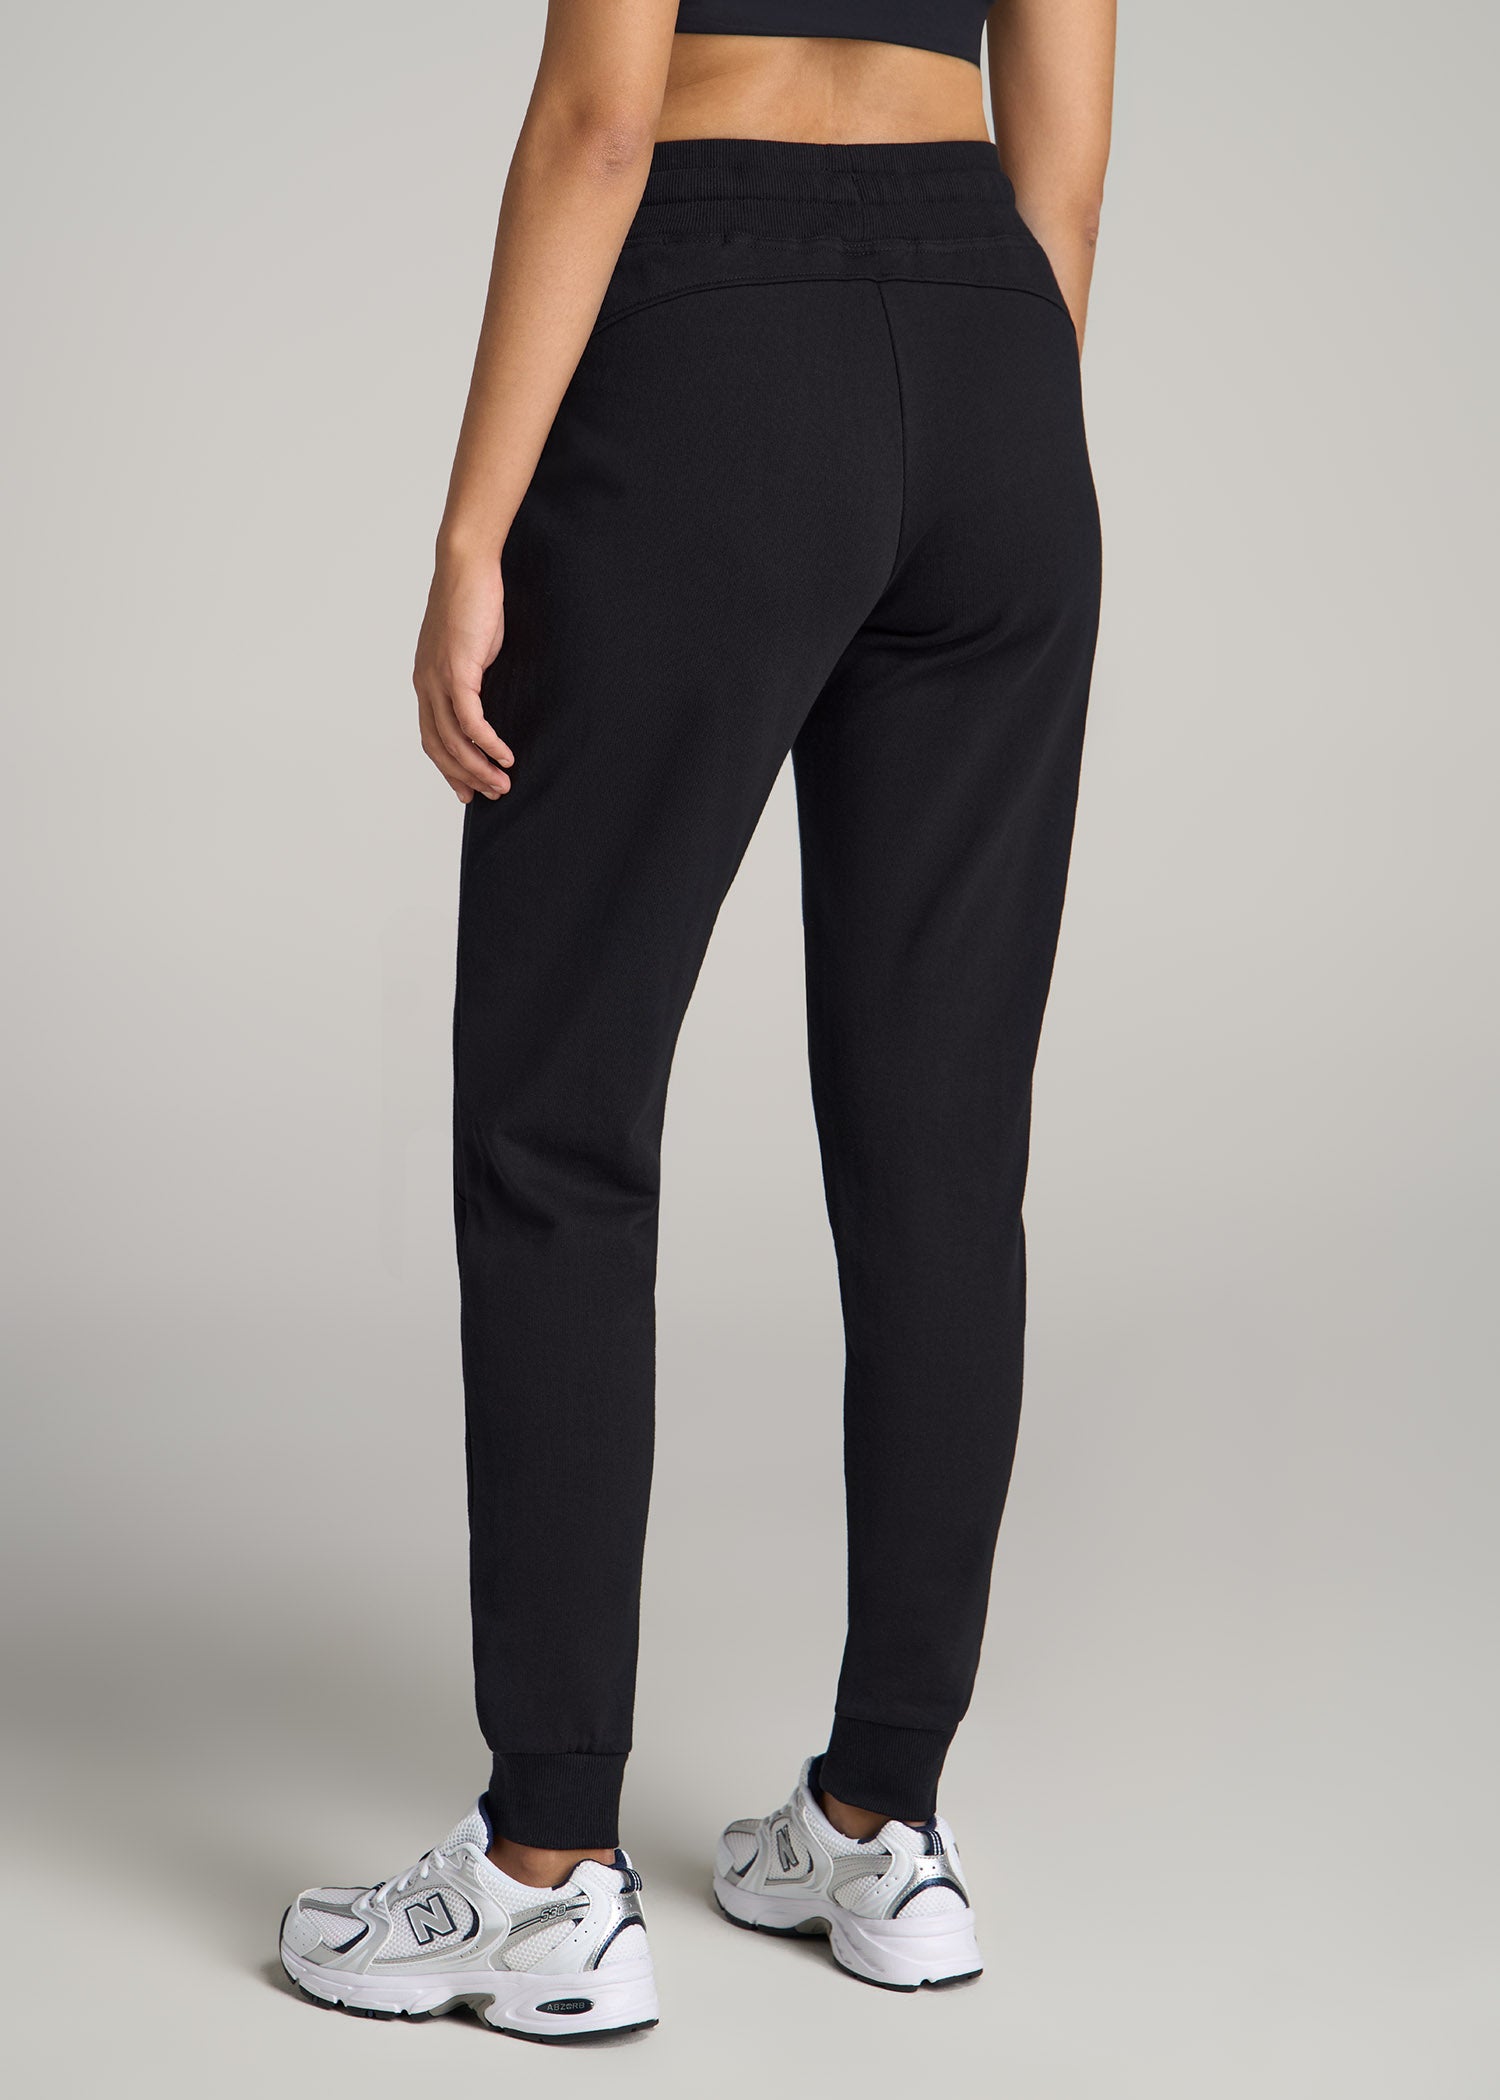 Wearever Fleece Open-Bottom Sweatpants for Tall Women in Black